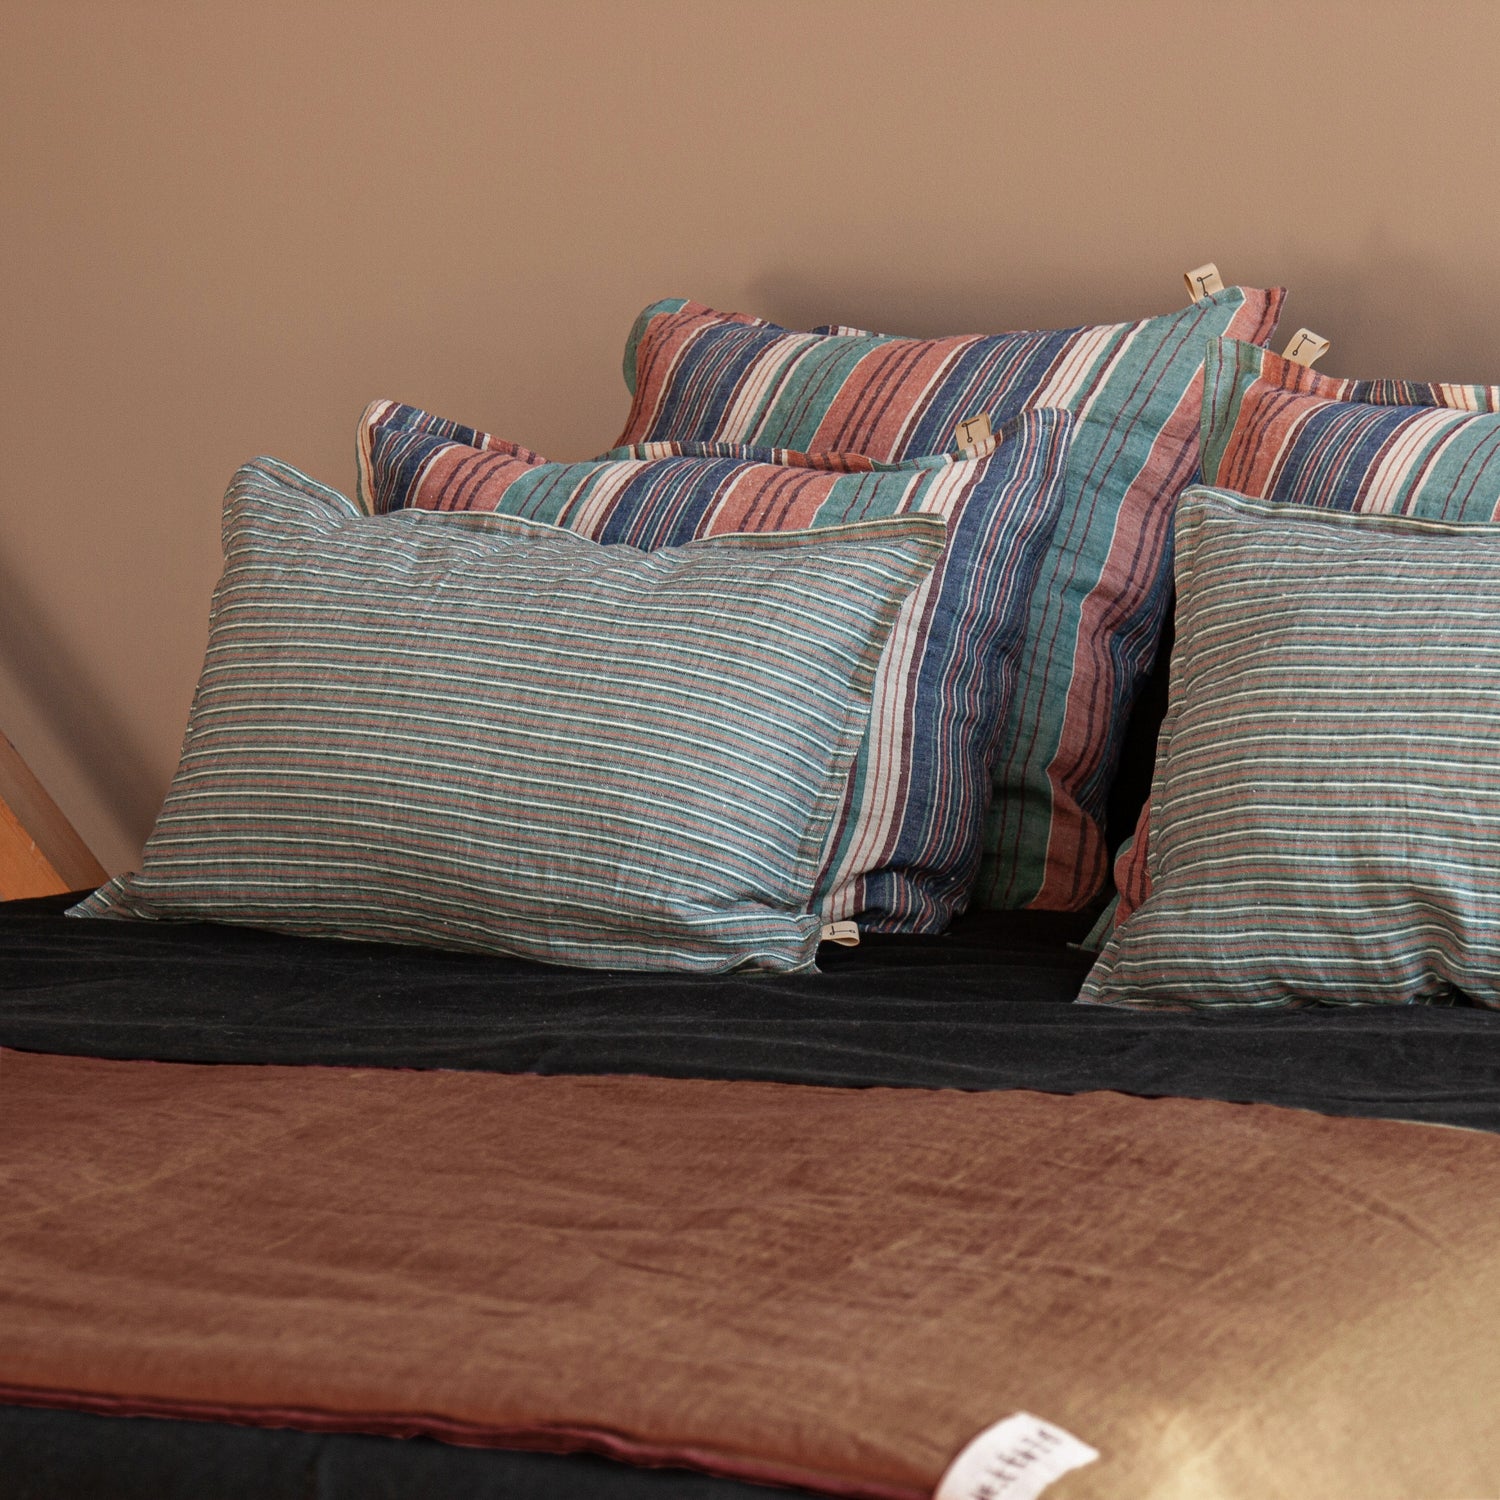 Grupo de cojines y pie de cama de color terracota.